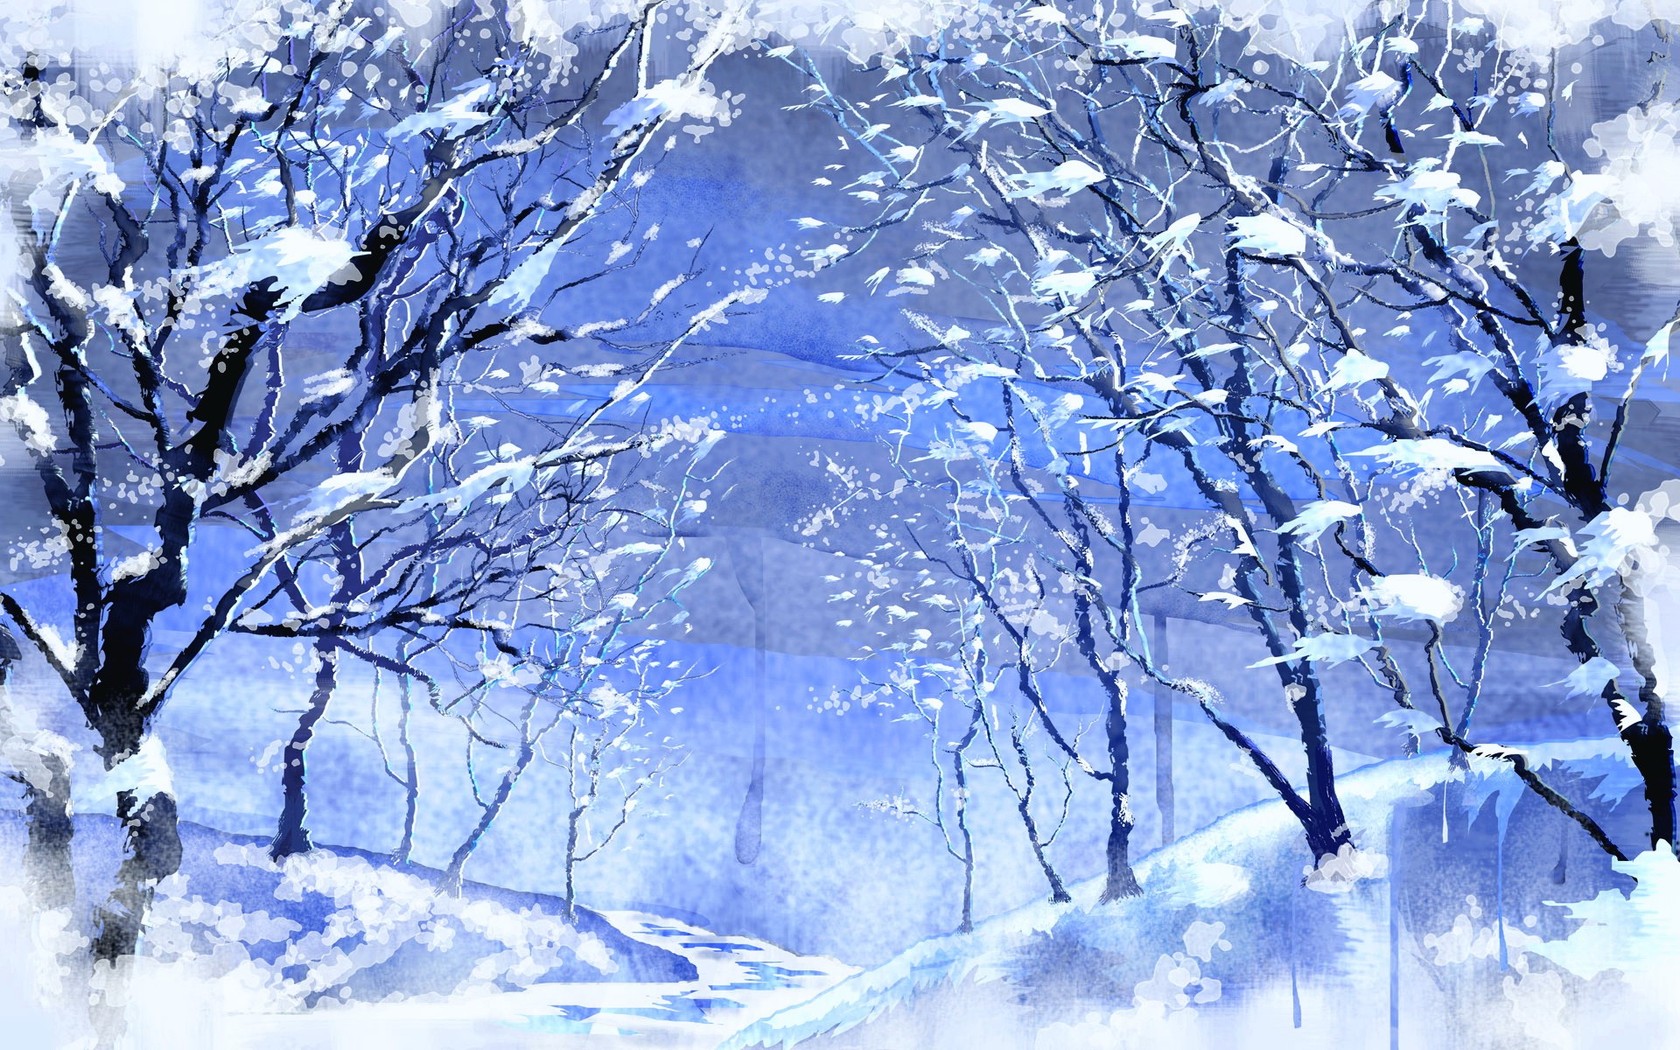 Hình nền rừng tuyết: Thưởng thức hình nền rừng tuyết đẹp như tranh vẽ để tạo không gian làm việc và nghỉ ngơi trong tiết trời se lạnh mùa đông.